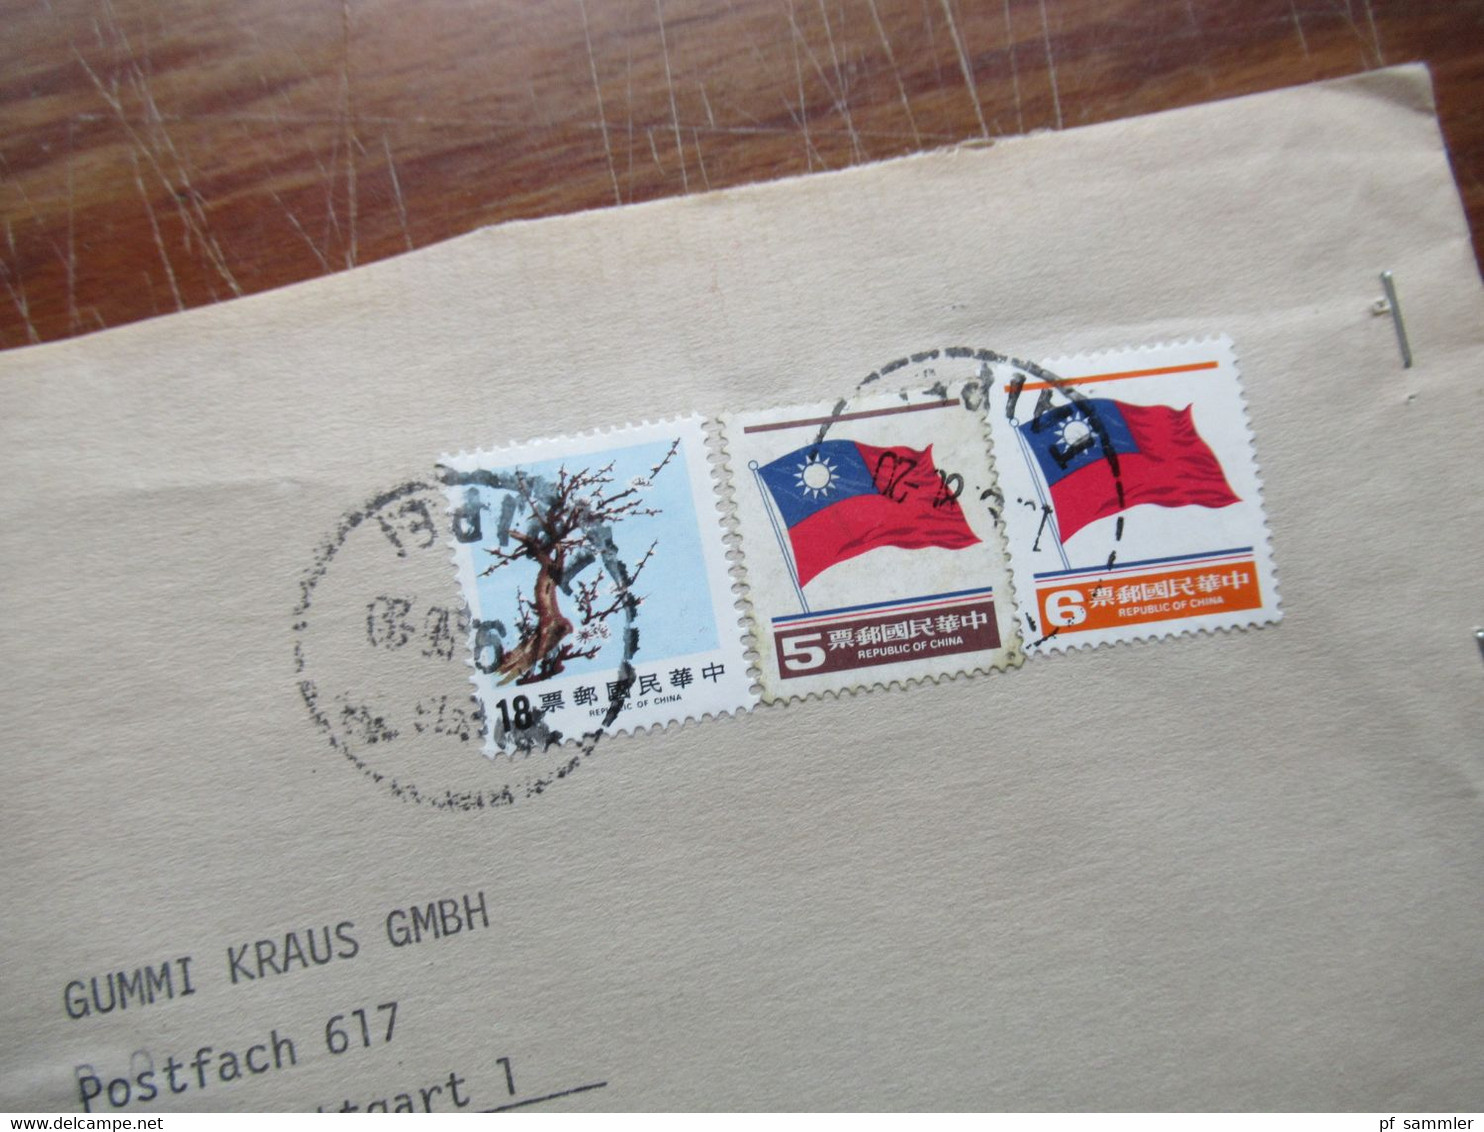 Asien VR China / Taiwan 1980er Jahre kleiner Posten mit 6 Firmenbriefe Air Mail / registered letter